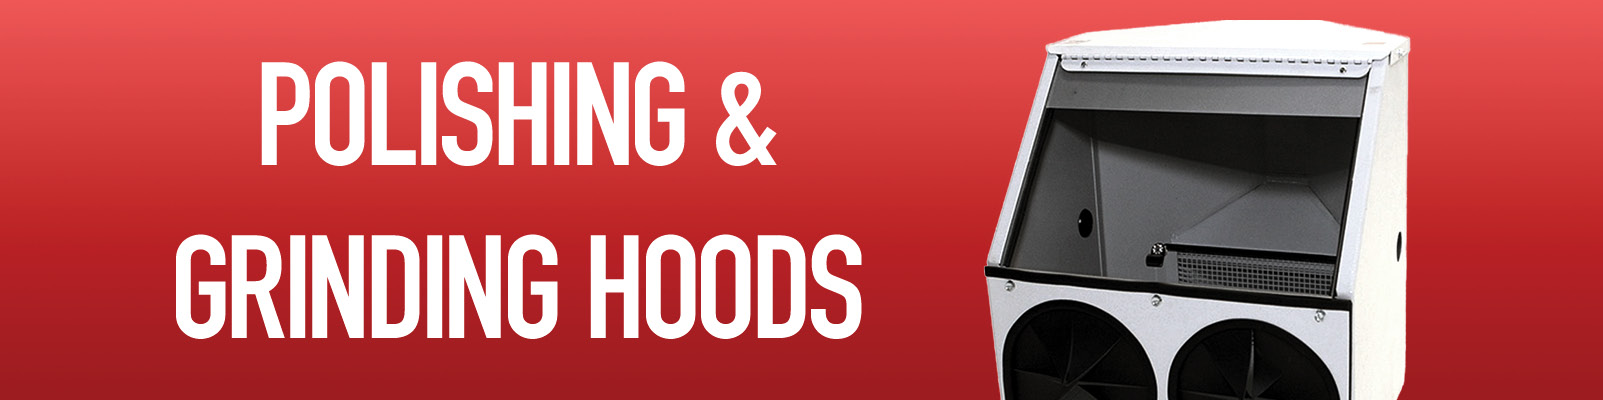 Polishing & Grinding Hoods